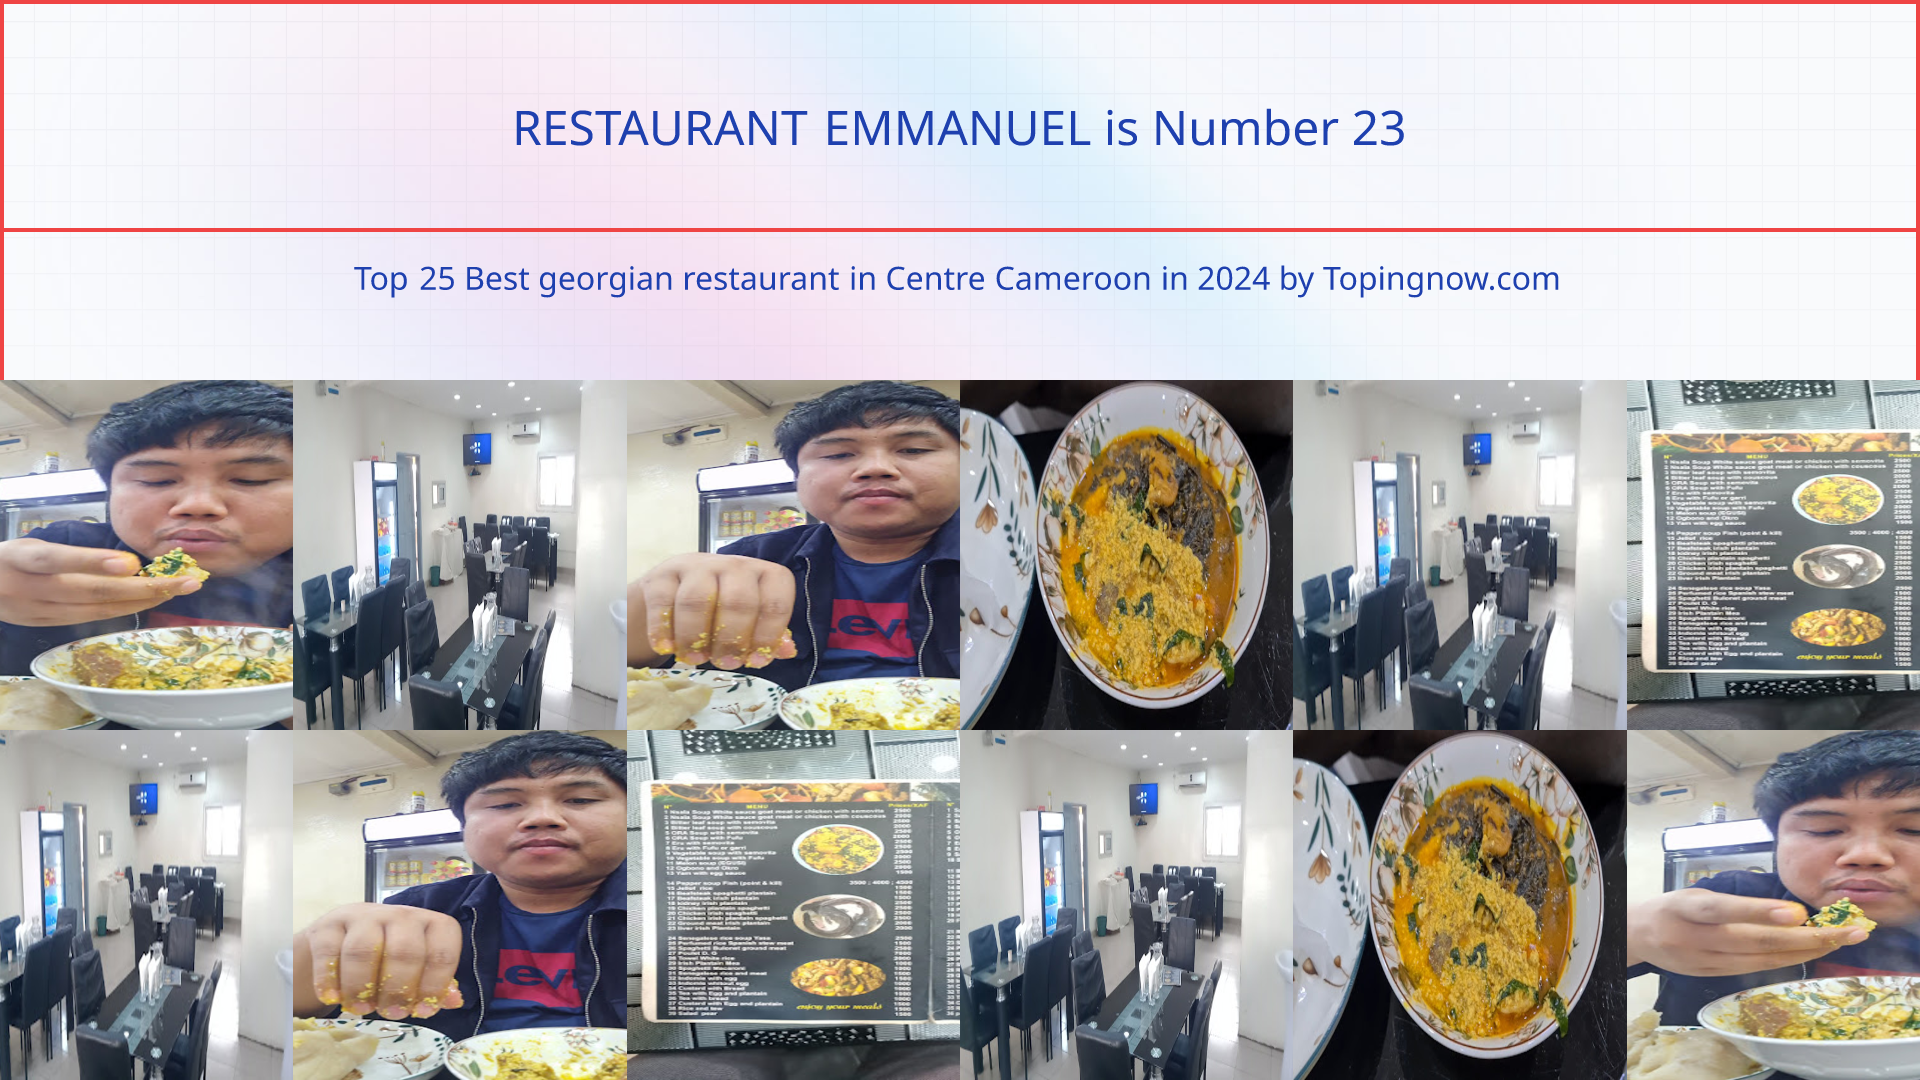 RESTAURANT EMMANUEL: Top 25 Best georgian restaurant in Centre Cameroon in 2024